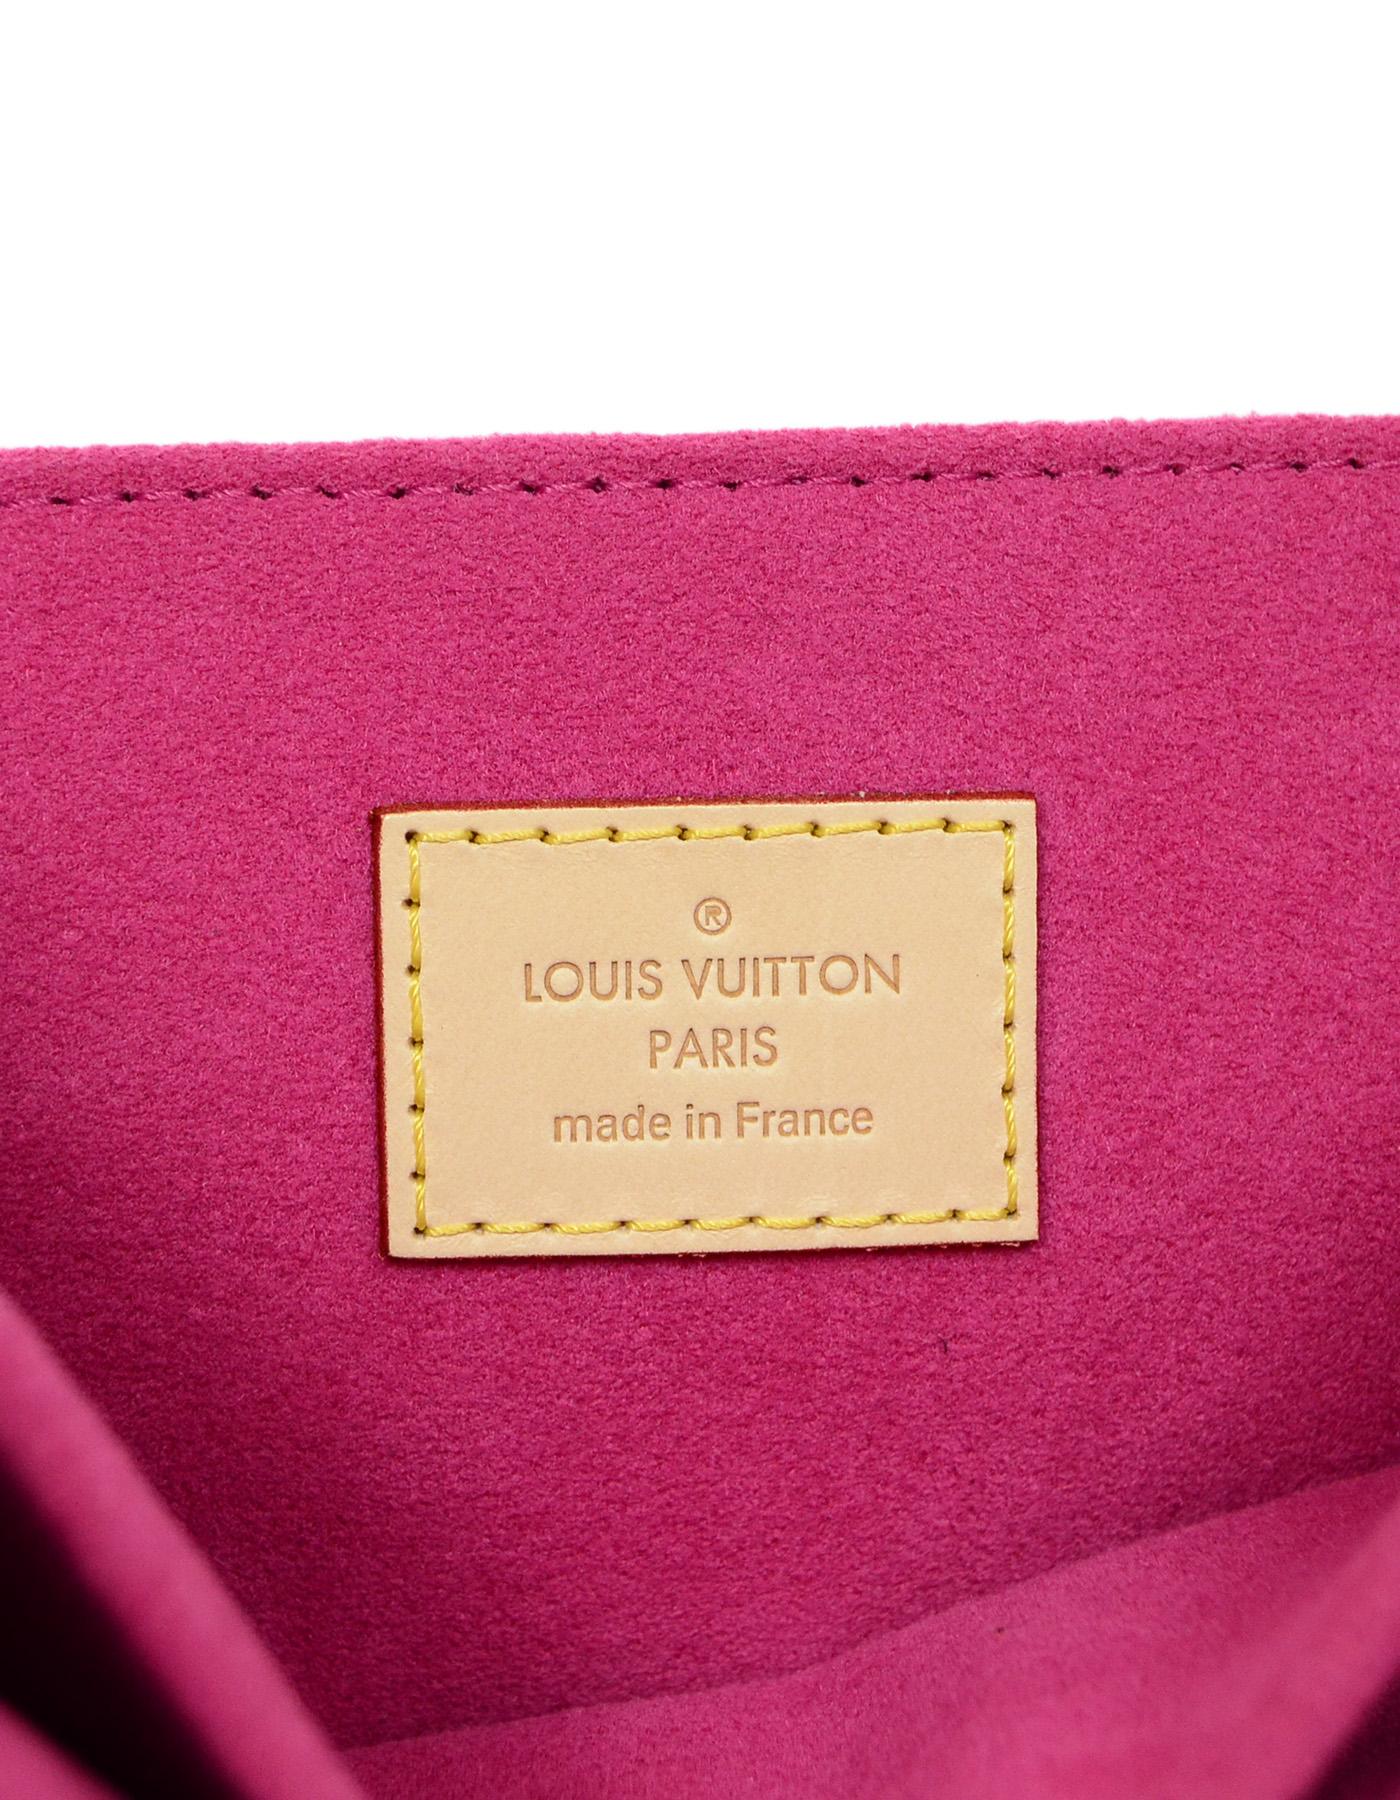 Louis Vuitton 2018 SOLD OUT Pochette Metis Bag W/ Monogram Canvas & Patches 2